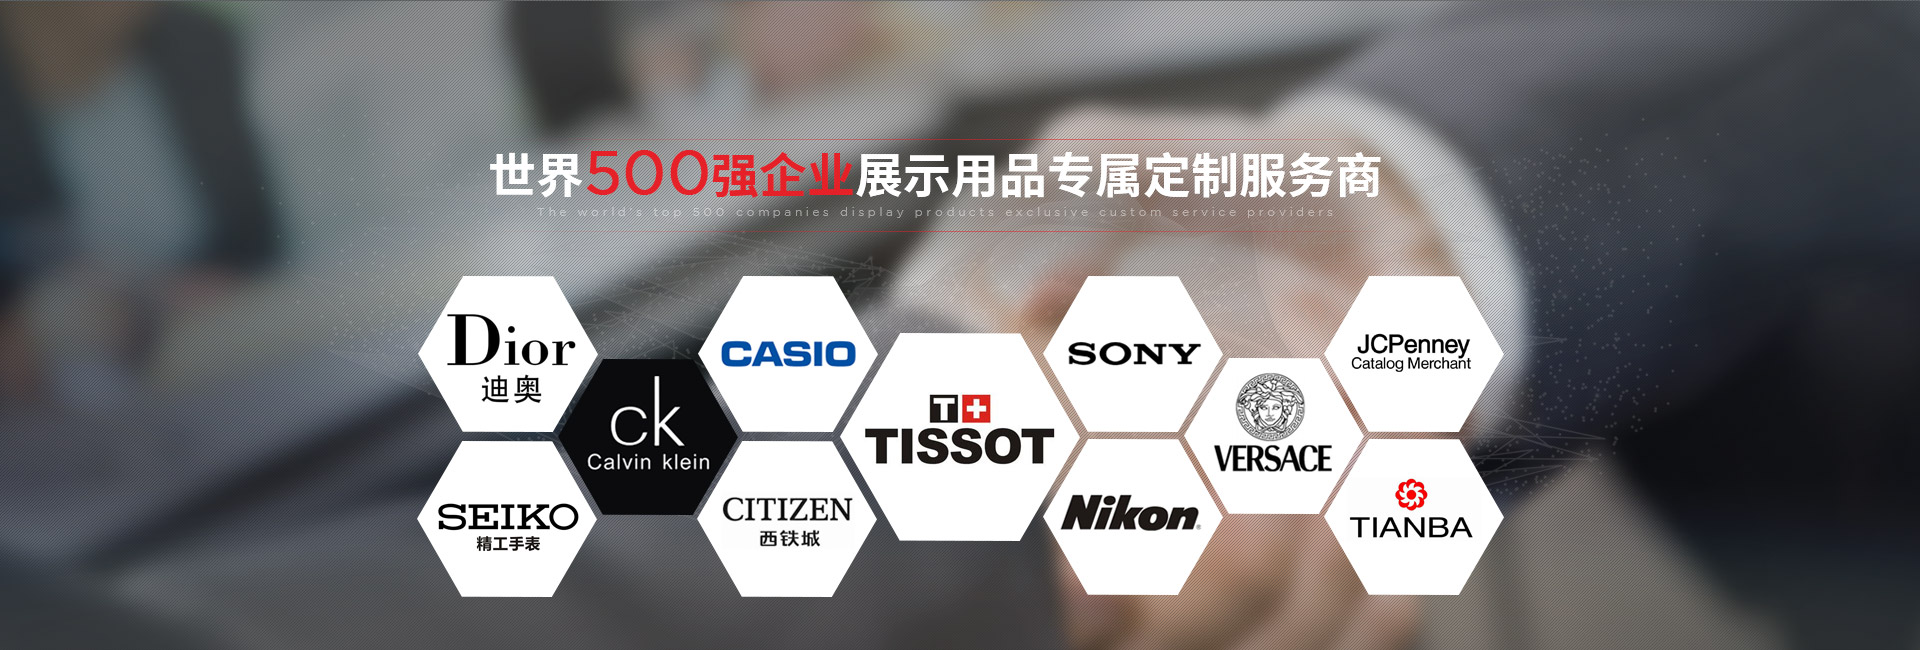 九游会j9.com-世界500强企业展示用品专属定制服务商